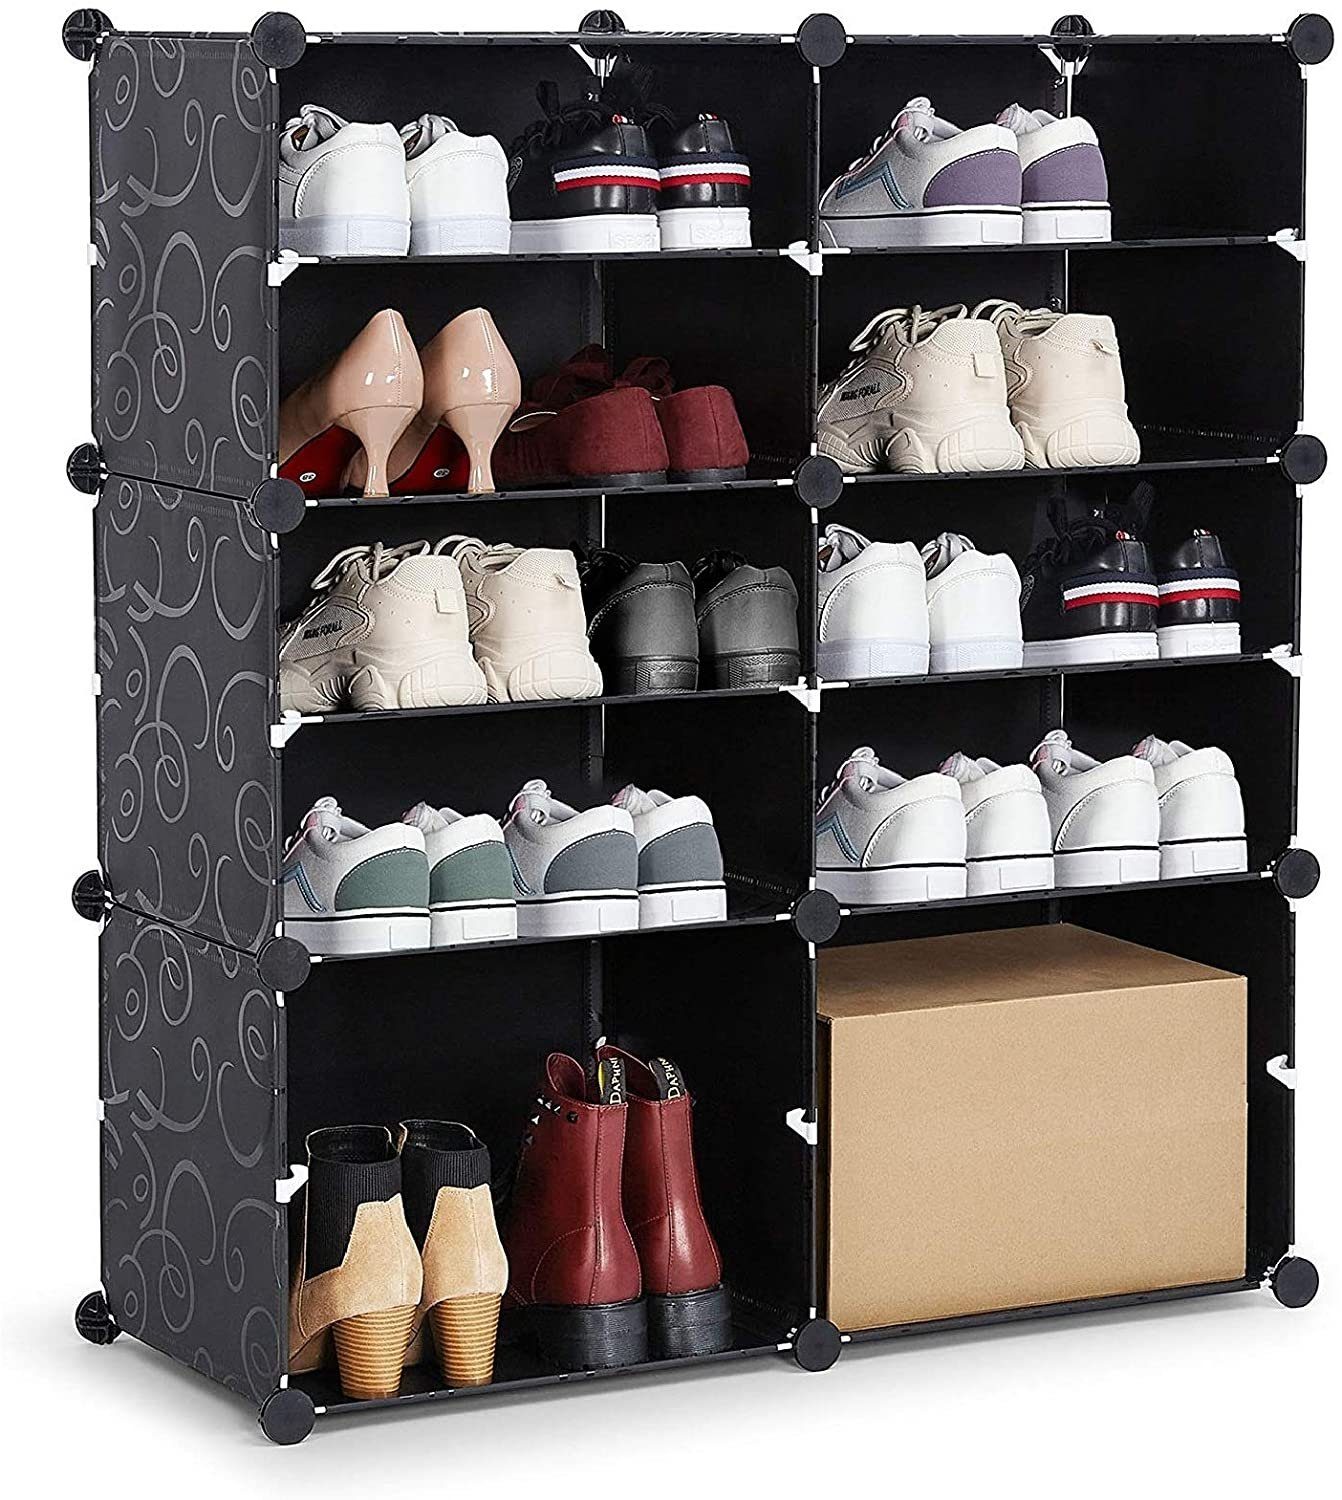 Mondeer Schuhschrank Kunststoff Schuhablage mit 6 Fächer und 2 Reihen